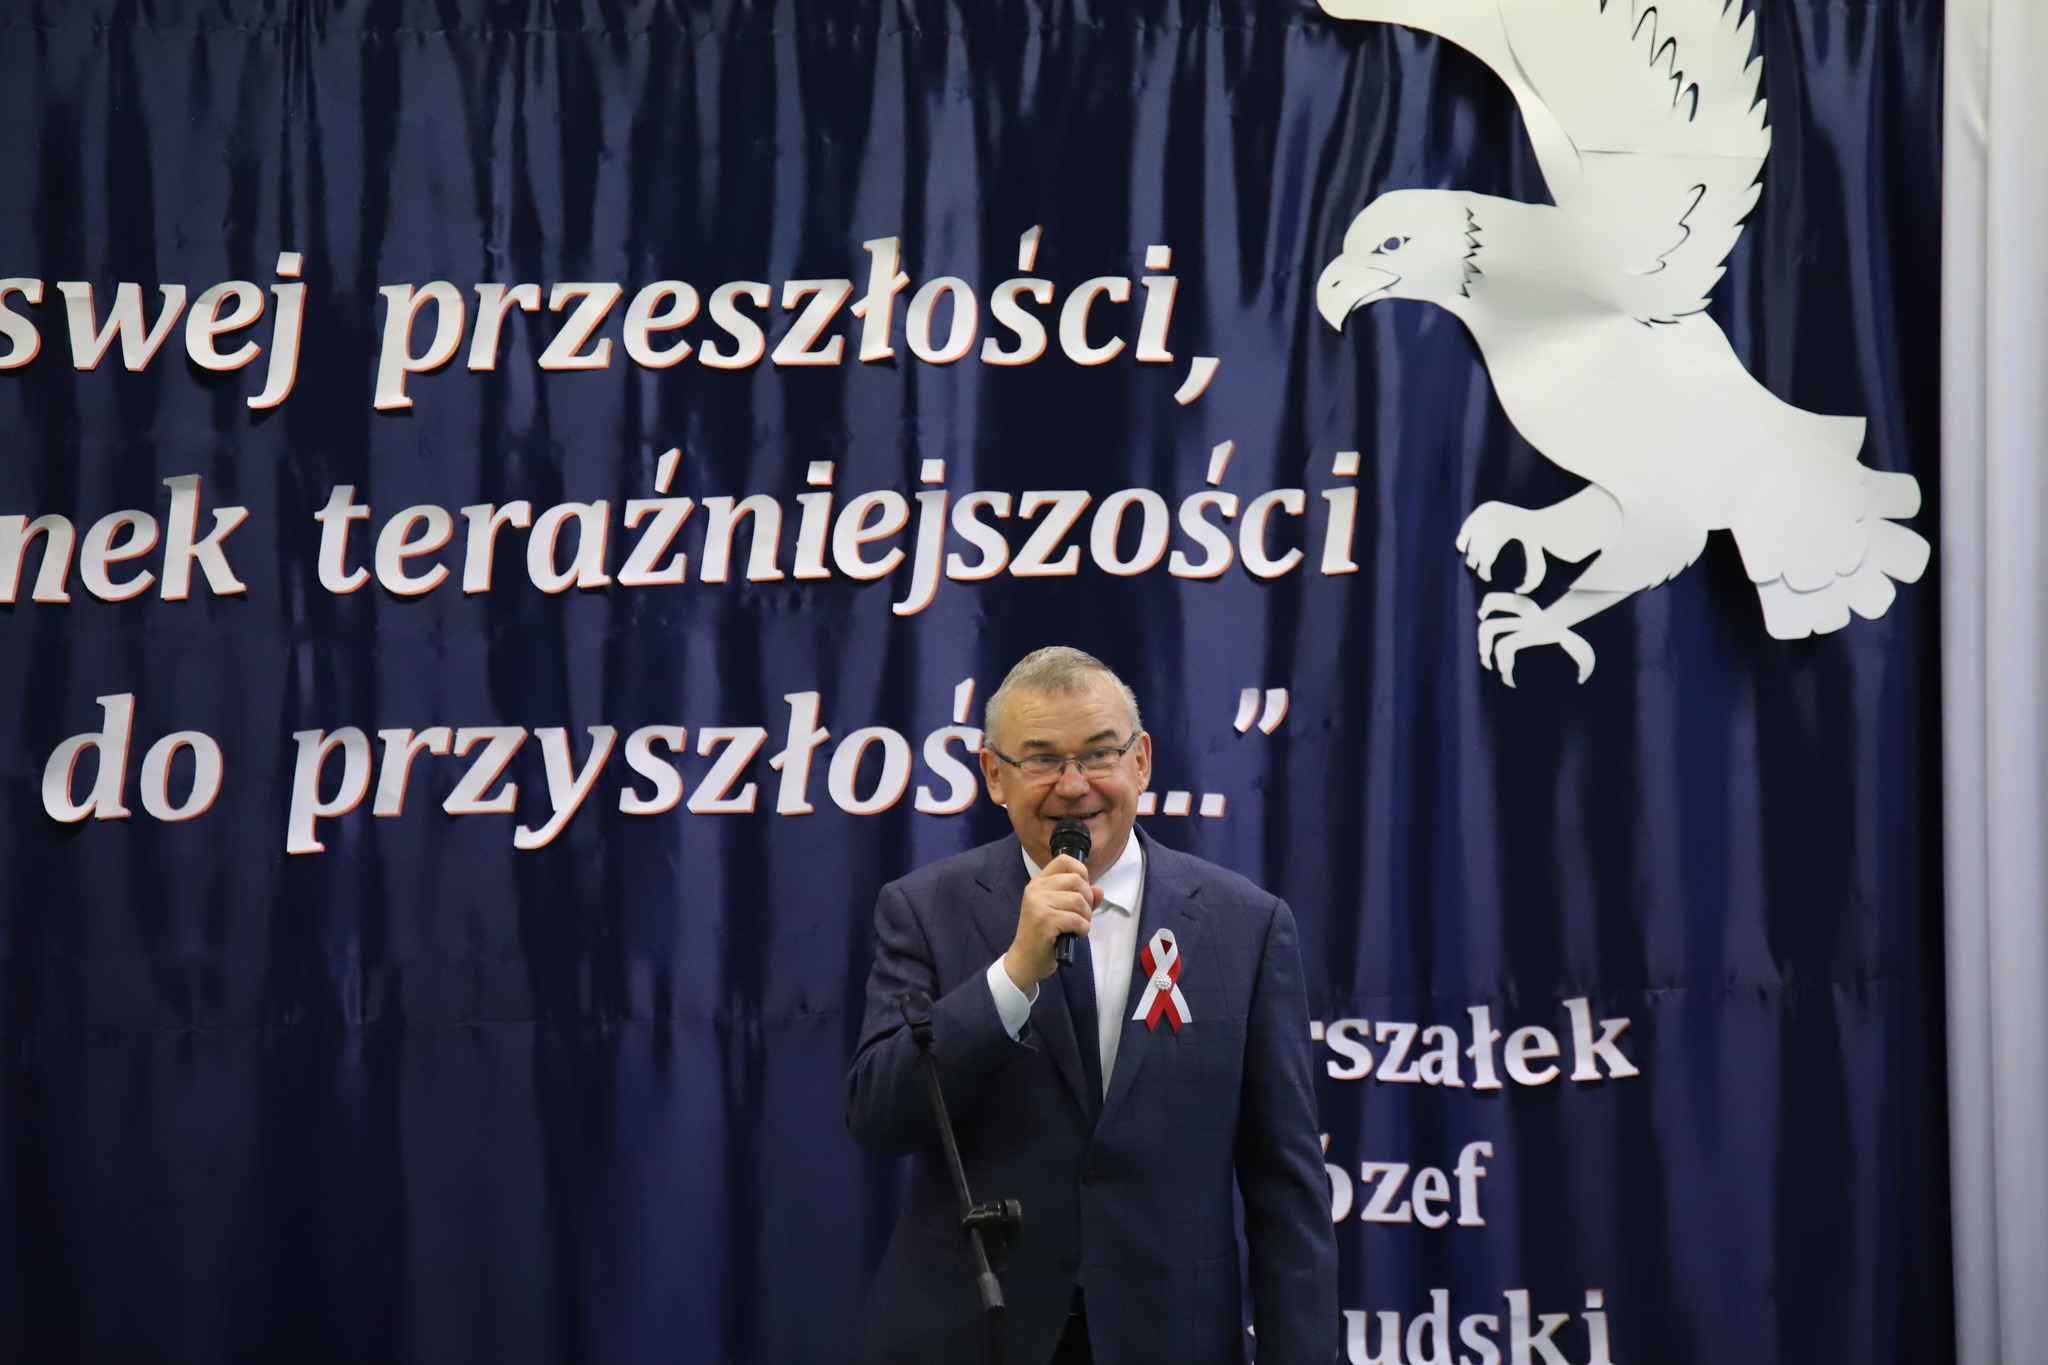 Wójt Gminy Brańsk Andrzej Jankowski w trakcie wystąpienia